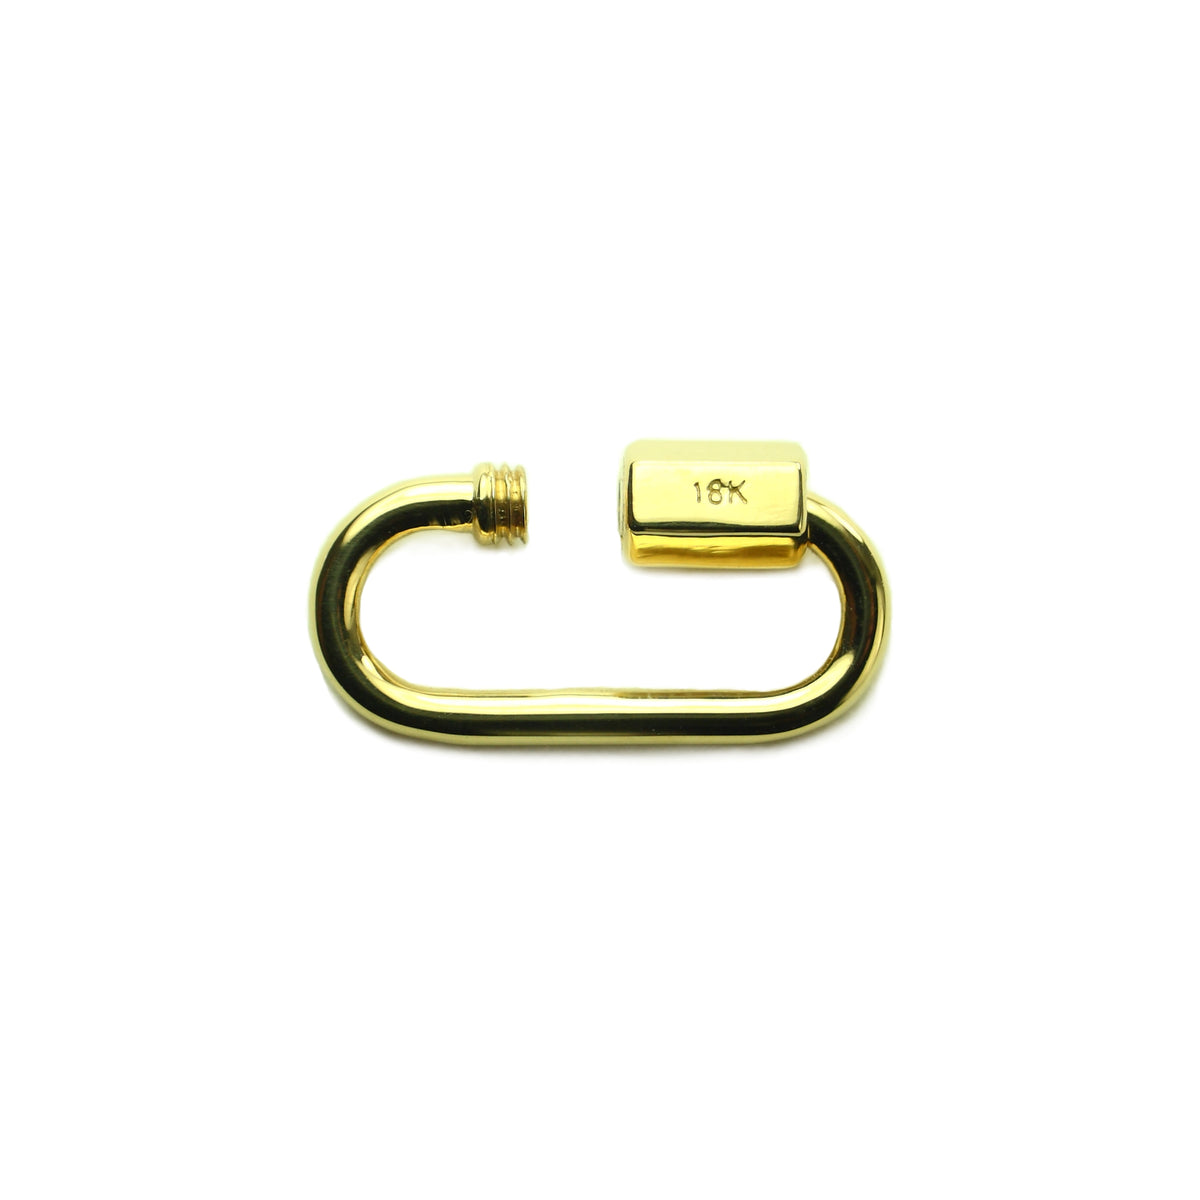 18k Soild Yellow Gold Carabiner Lock,18k Gold Carabiner Jewelry,plain Solid Gold  Carabiner Lock, Oval Gold Carabiner Lock,gift for Mother 